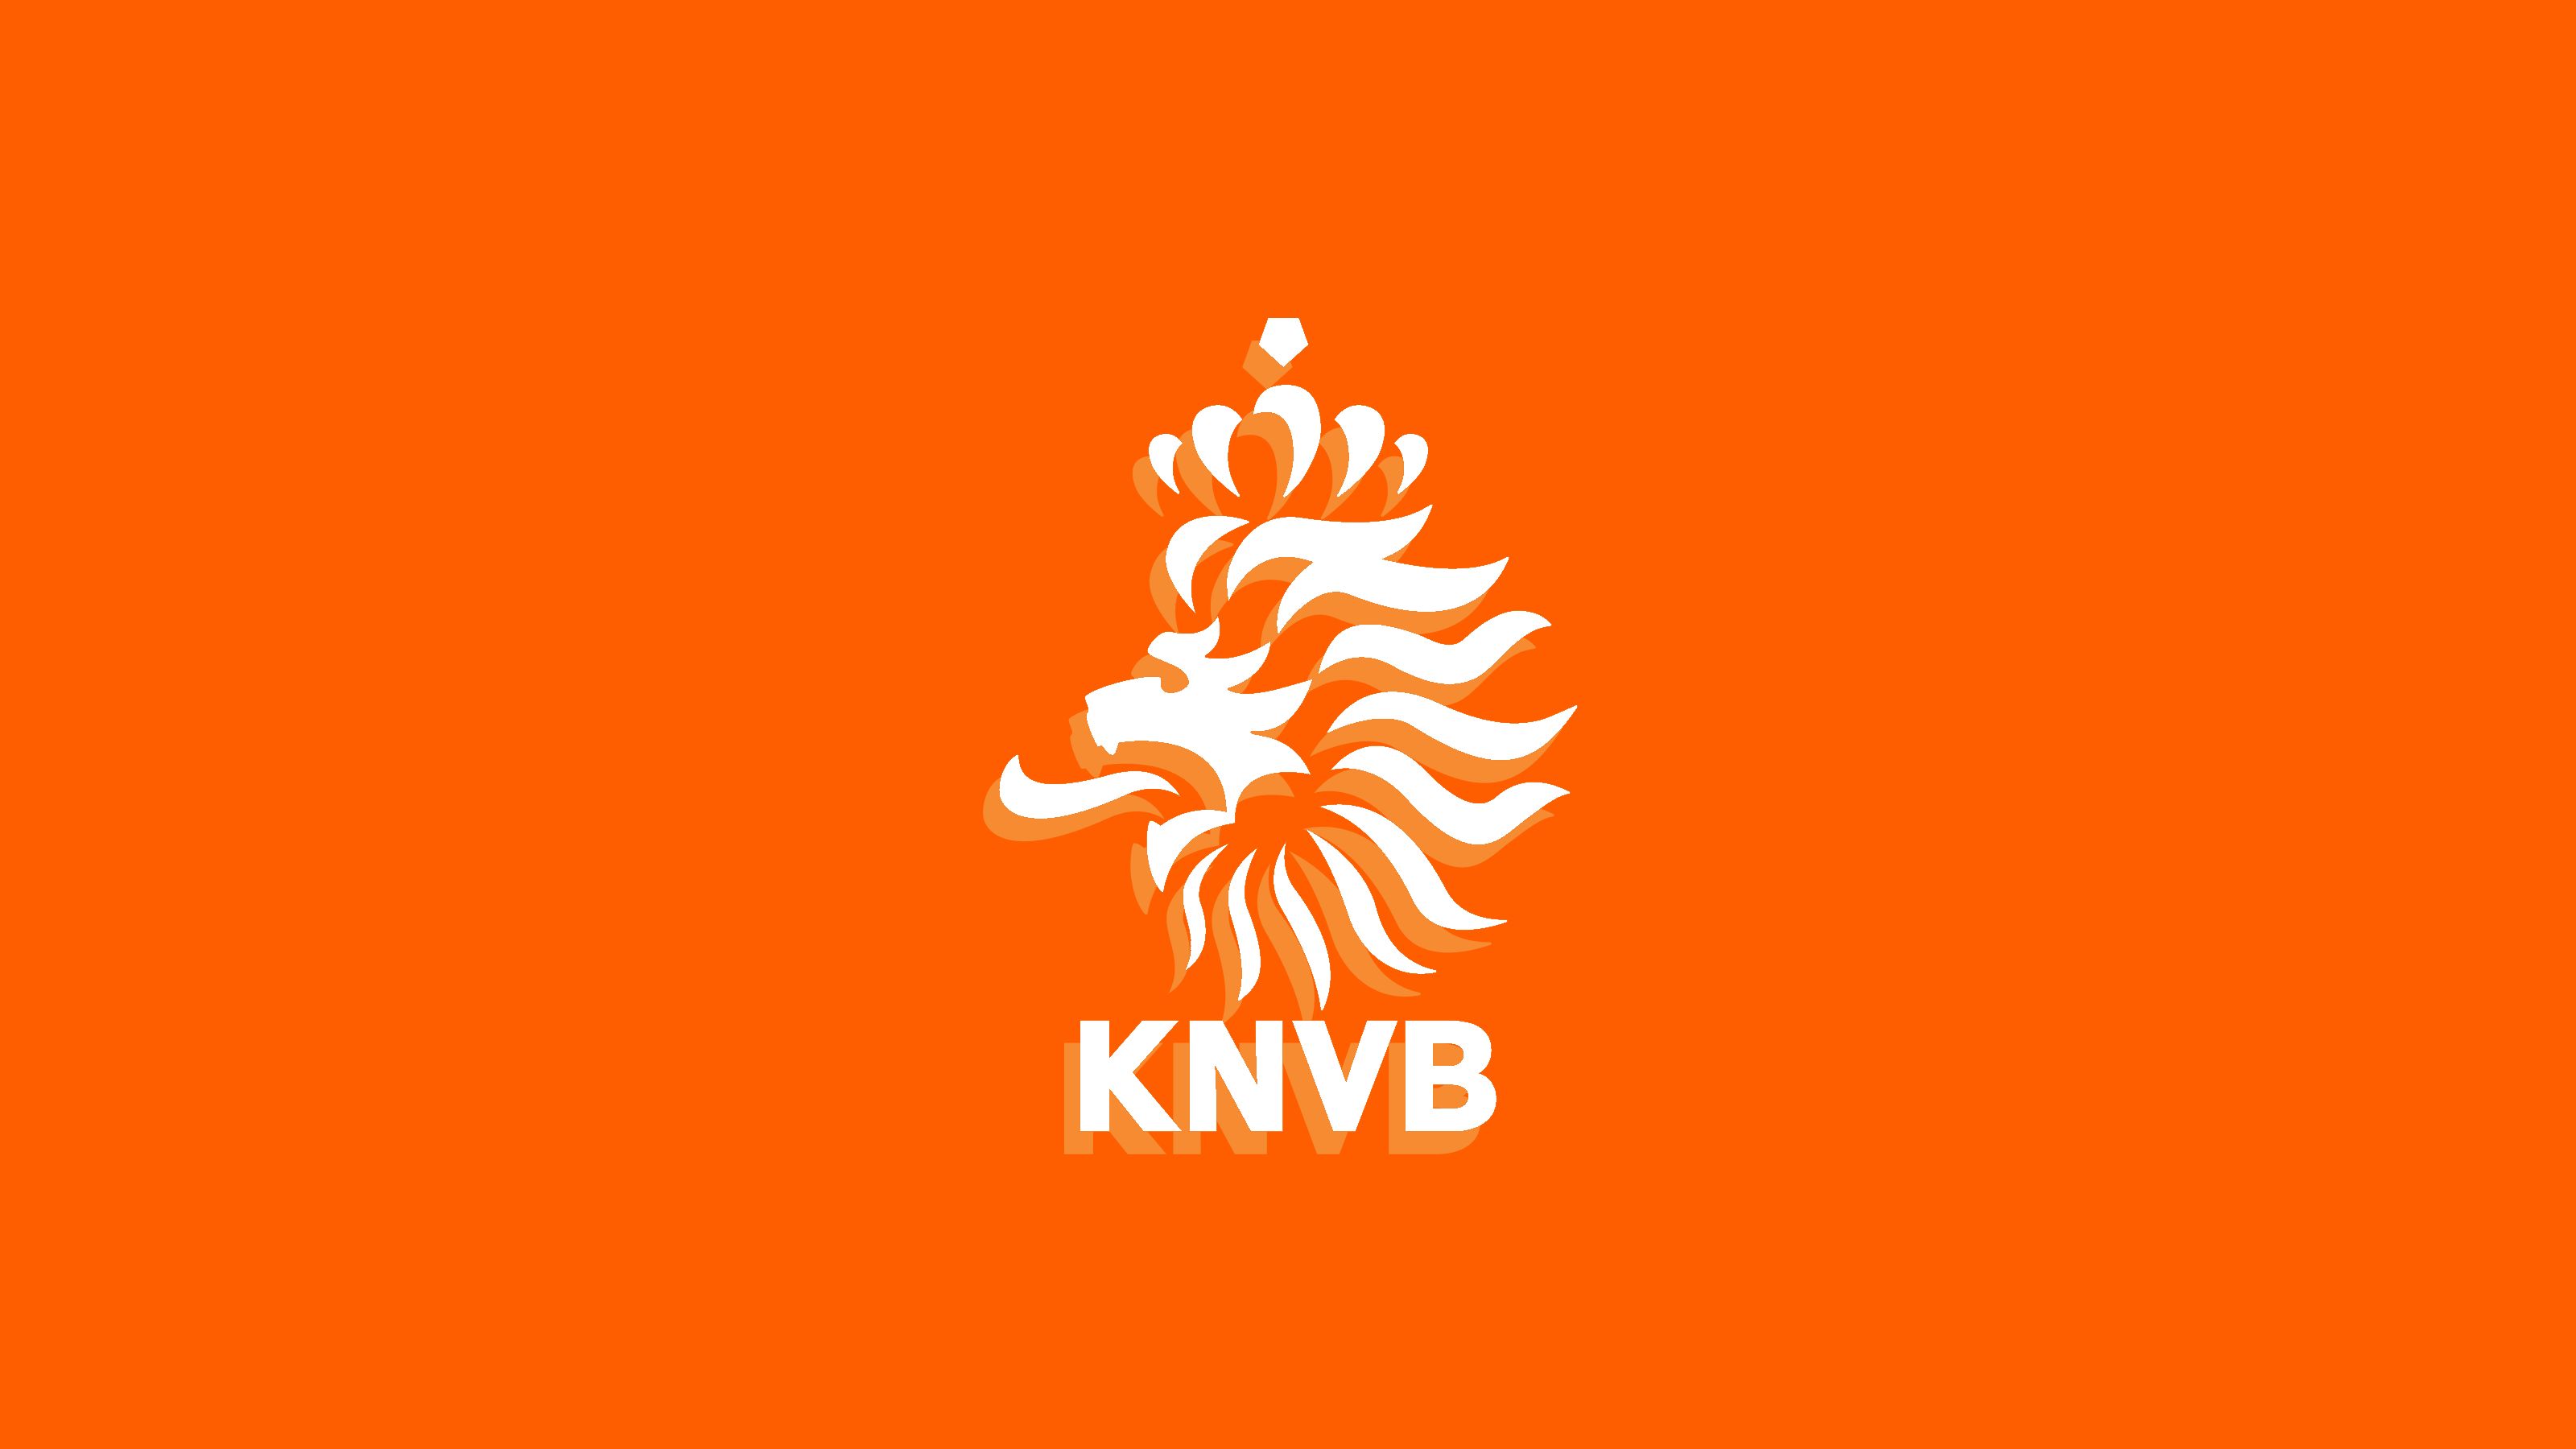 Скачать обои Сборная Нидерландов По Футболу на телефон бесплатно